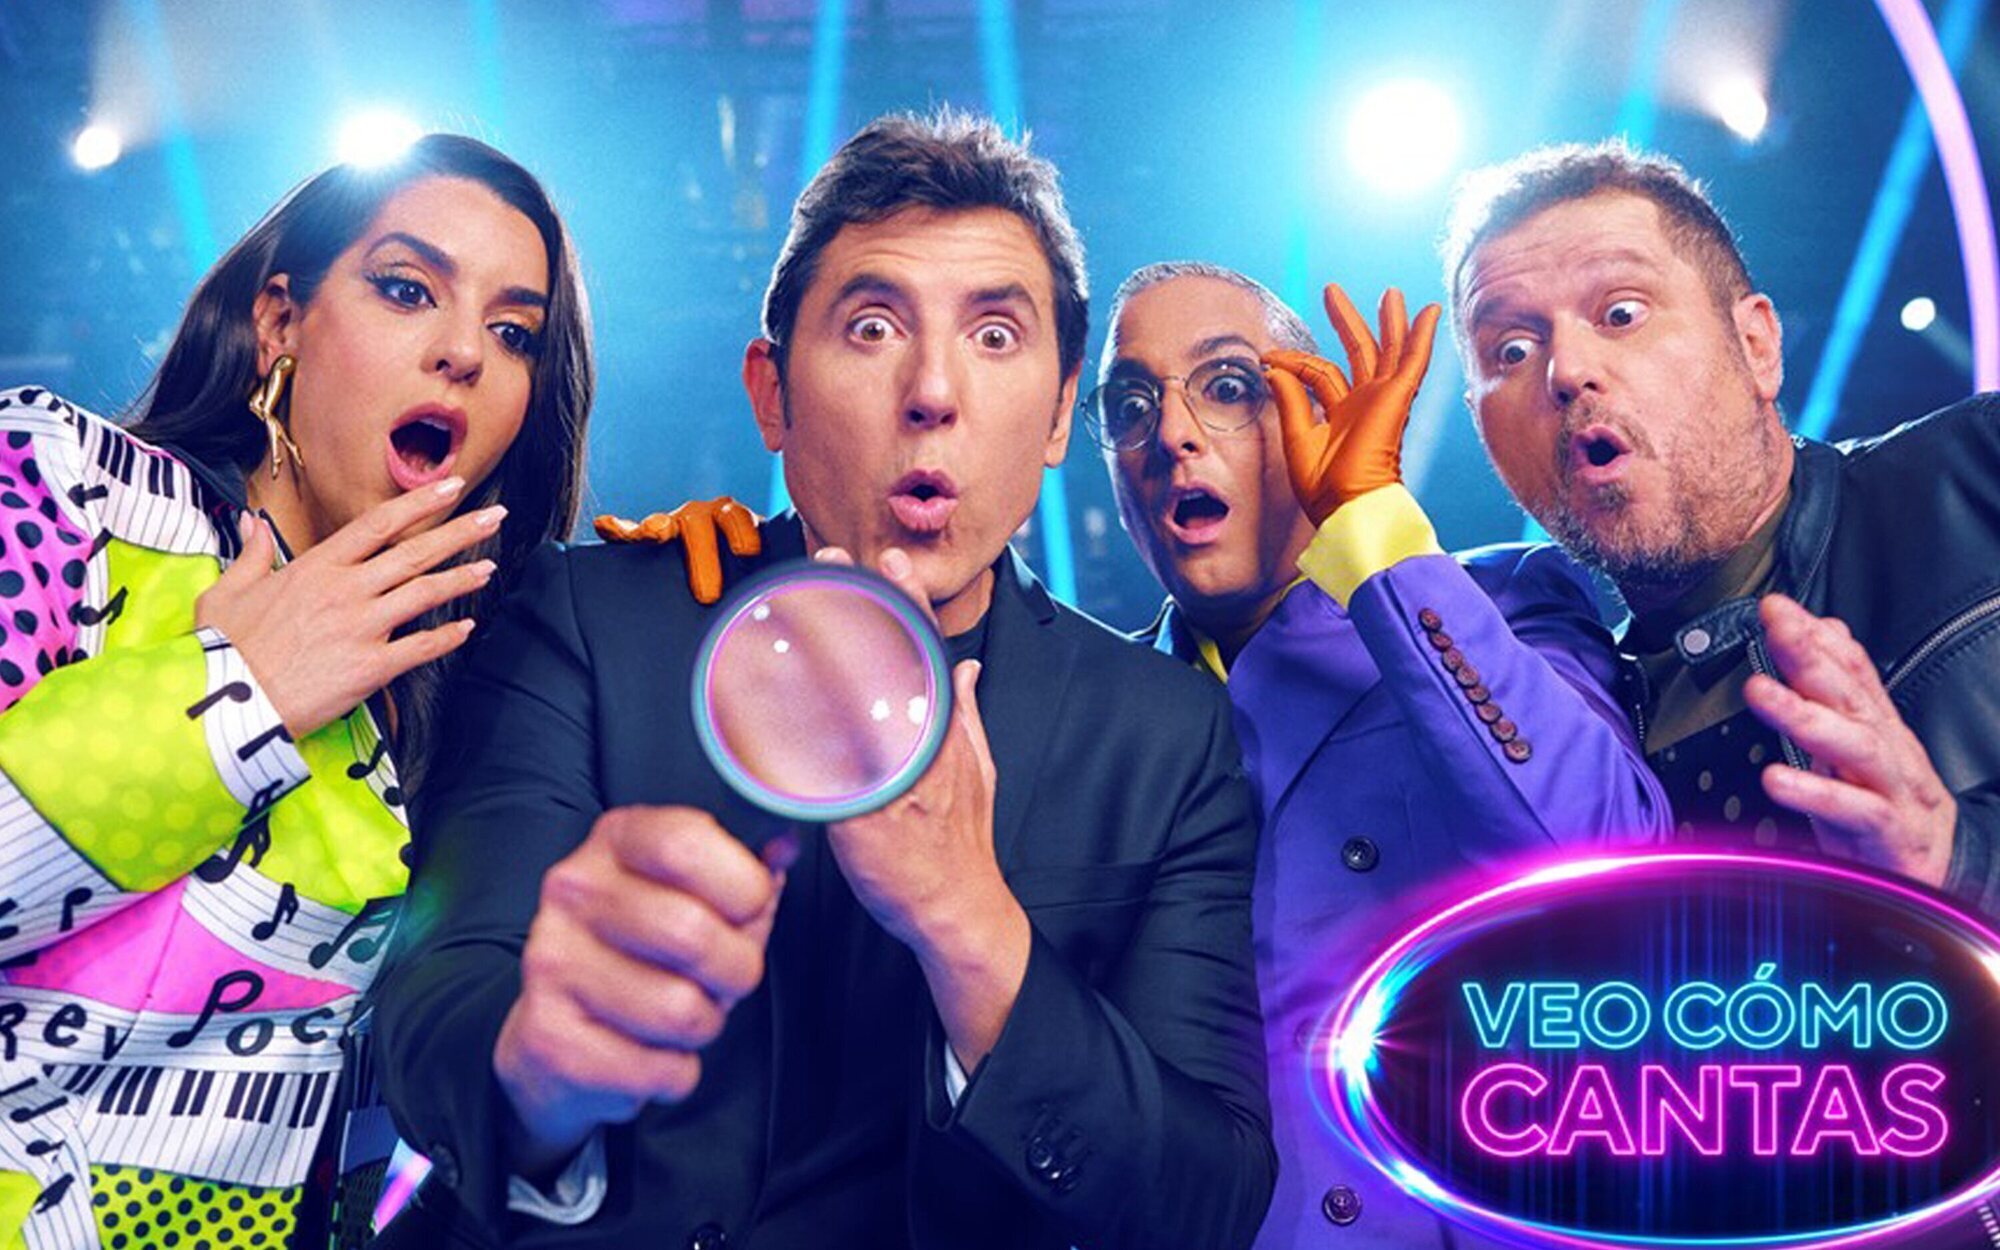 'Veo cómo cantas' estrena su segunda edición el 29 de julio en Antena 3